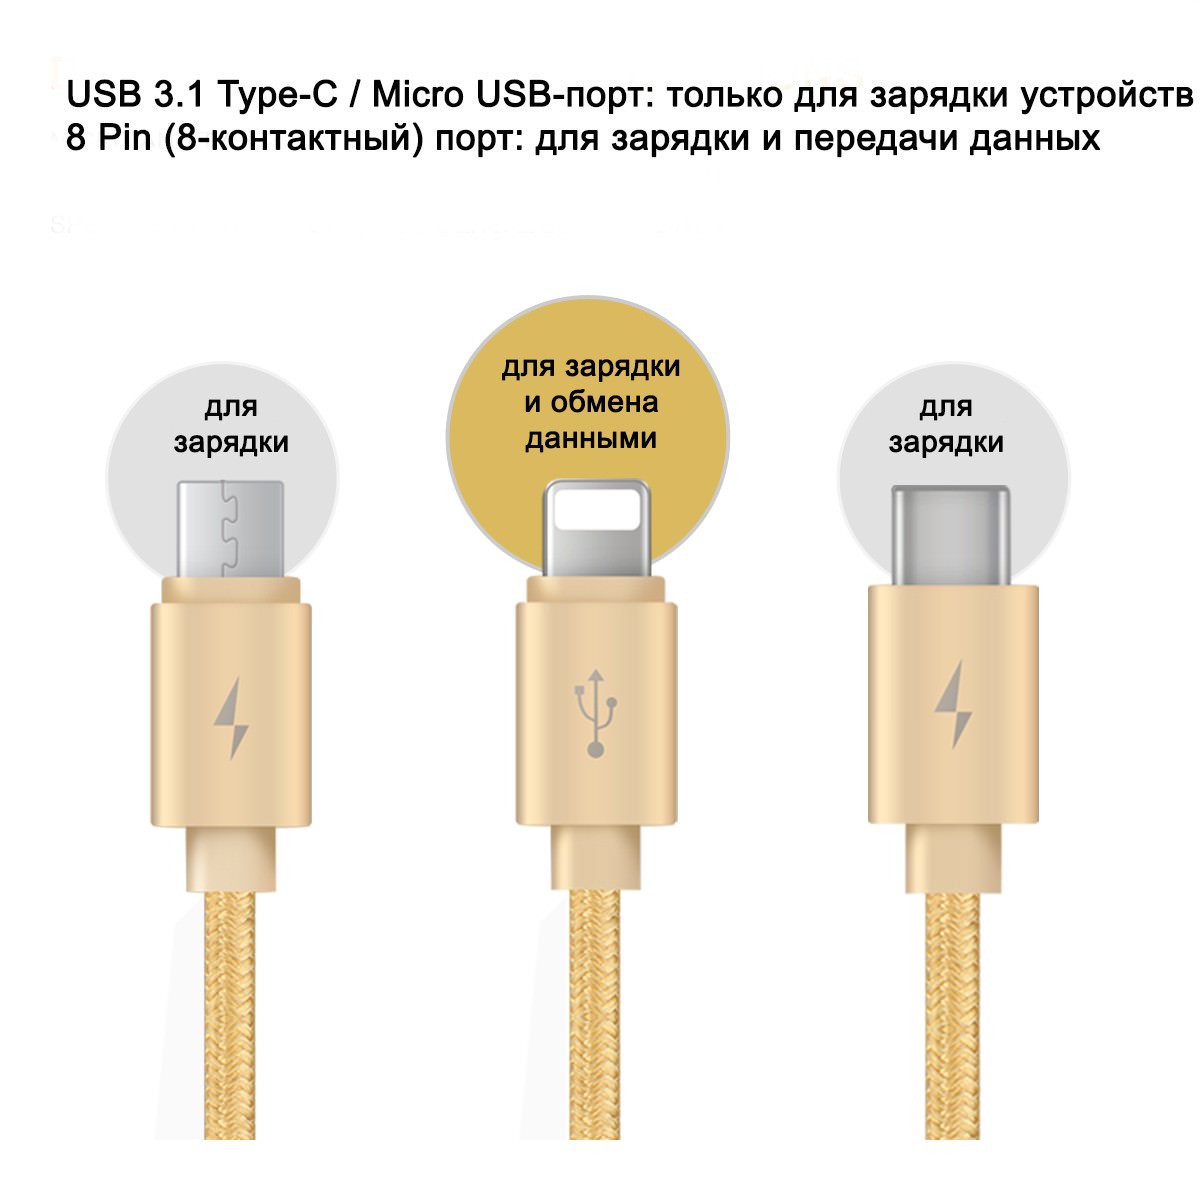 15096 - USB-кабель 3 в 1 для зарядки и передачи данных с 3 портами Baseus Portman Series: 8 Pin + USB 3.1 Type-C + Micro USB